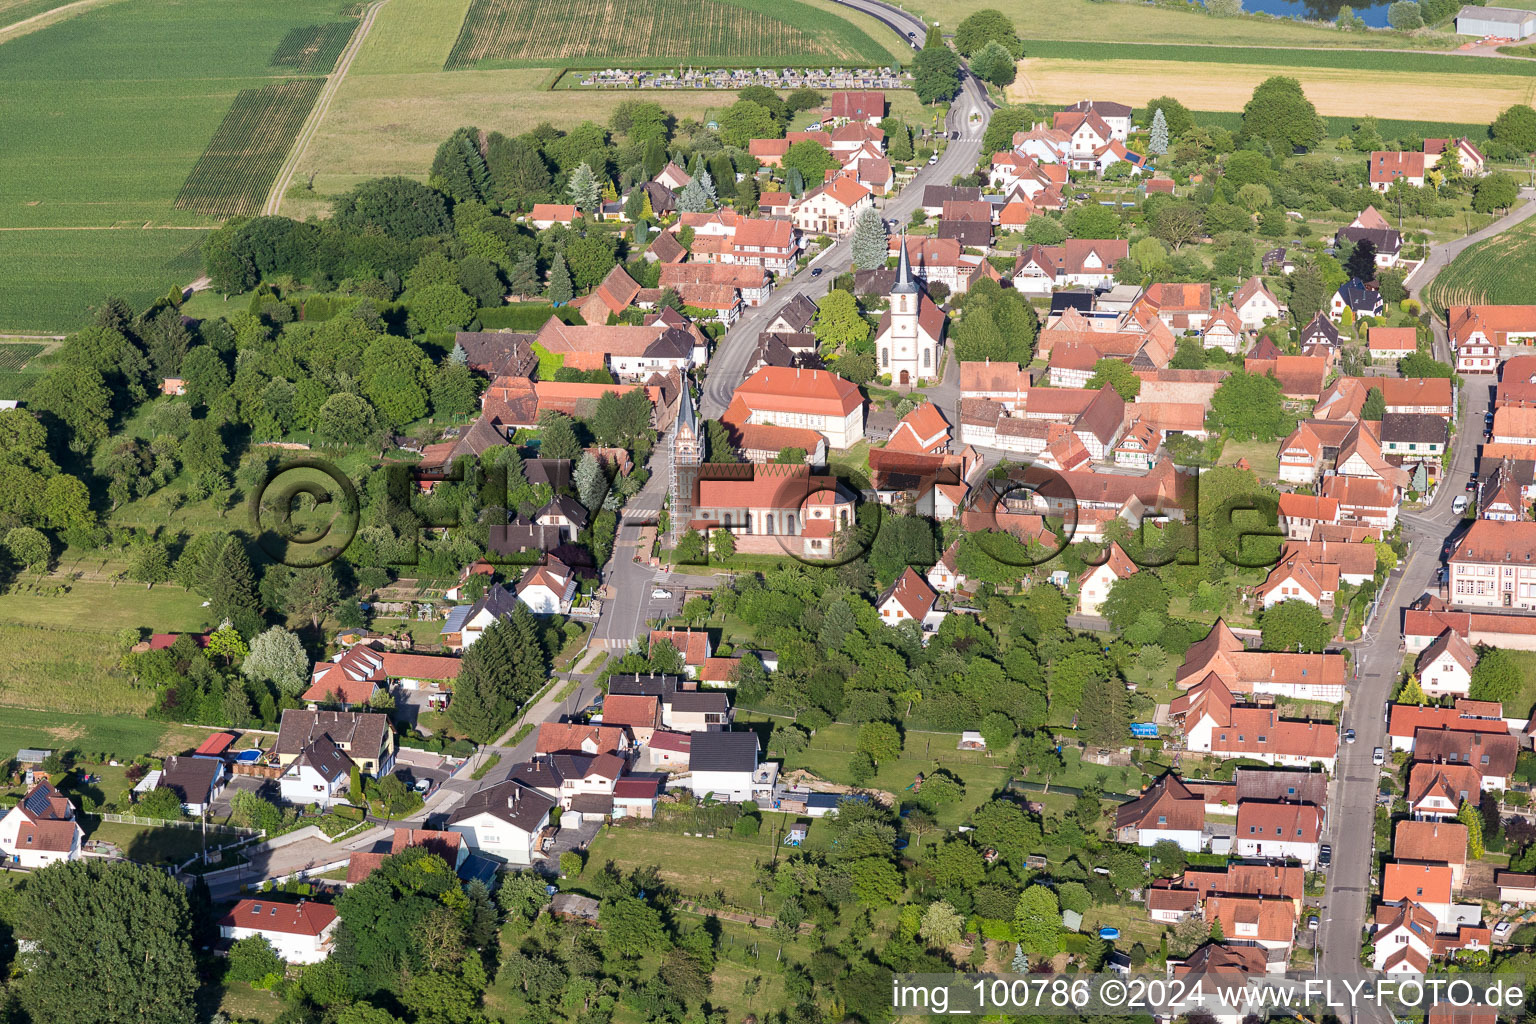 Village view in Merkwiller-Pechelbronn in Grand Est, France